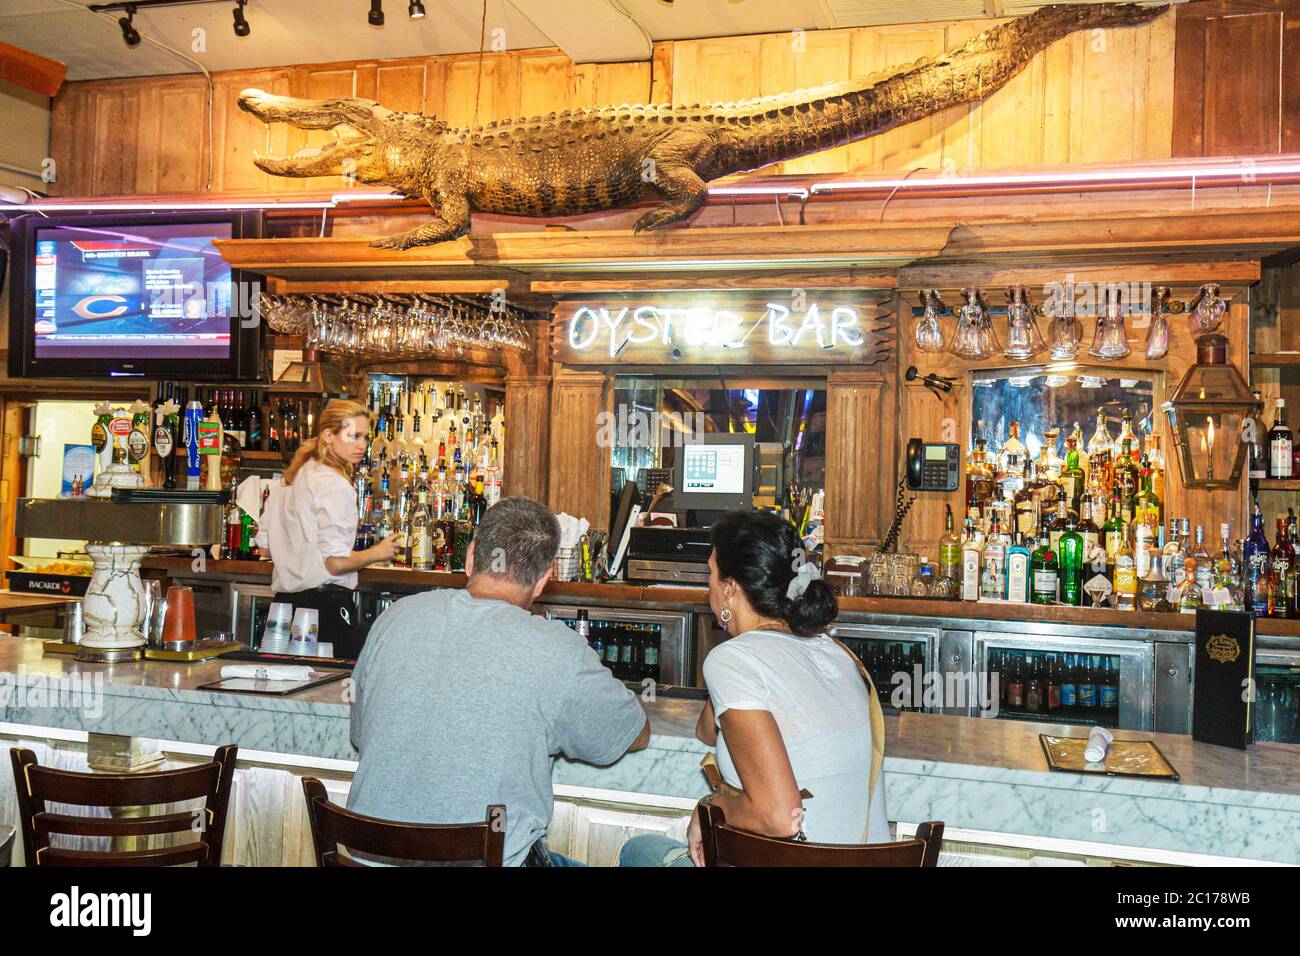 New Orleans Louisiana,French Quarter,Bourbon Street,Oyster Bar,drink drinks drinking,liquor,alcohol,bottles,glasses,bartender,man men male,woman femal Stock Photo